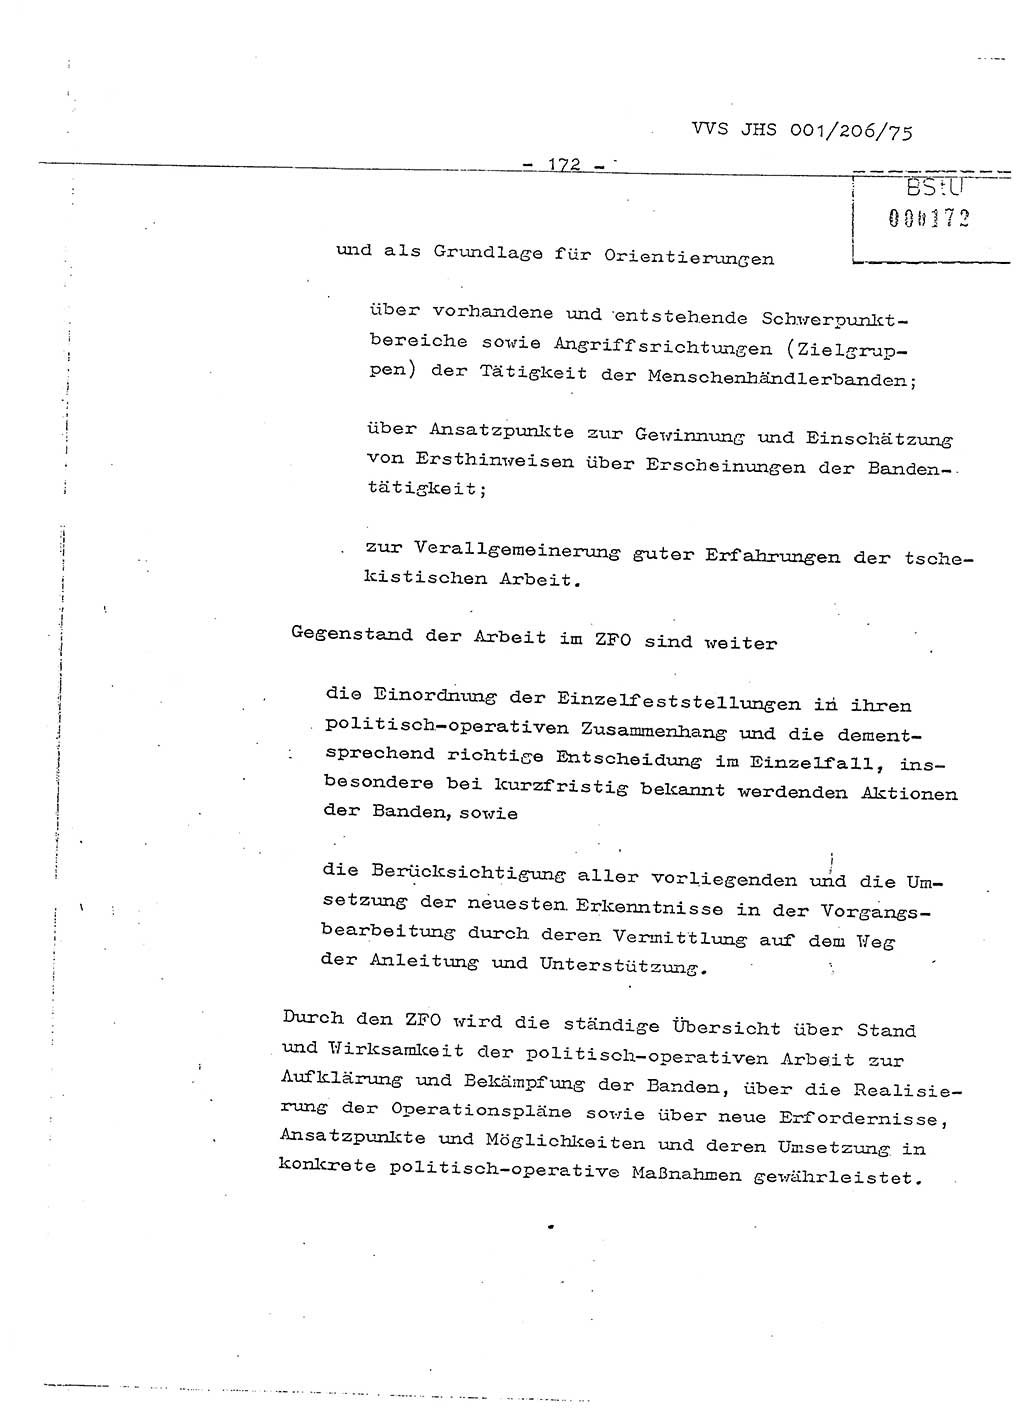 Dissertation Generalmajor Manfred Hummitzsch (Leiter der BV Leipzig), Generalmajor Heinz Fiedler (HA Ⅵ), Oberst Rolf Fister (HA Ⅸ), Ministerium für Staatssicherheit (MfS) [Deutsche Demokratische Republik (DDR)], Juristische Hochschule (JHS), Vertrauliche Verschlußsache (VVS) 001-206/75, Potsdam 1975, Seite 172 (Diss. MfS DDR JHS VVS 001-206/75 1975, S. 172)